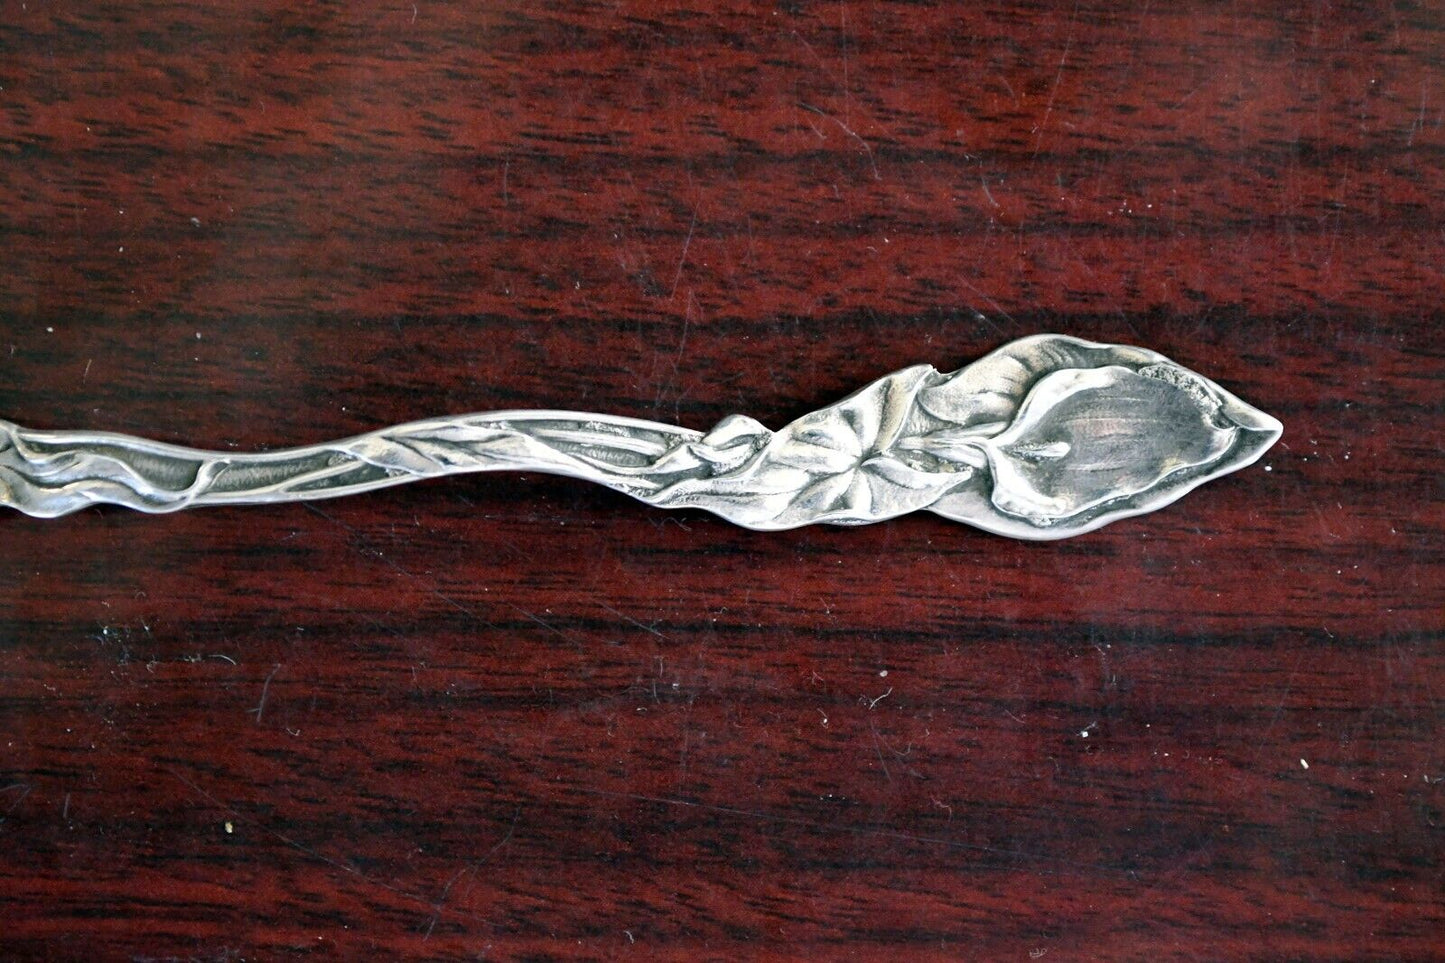 Pasadena California Sterling Silver Souvenir Spoon 5" Paye & Baker .31 oz.